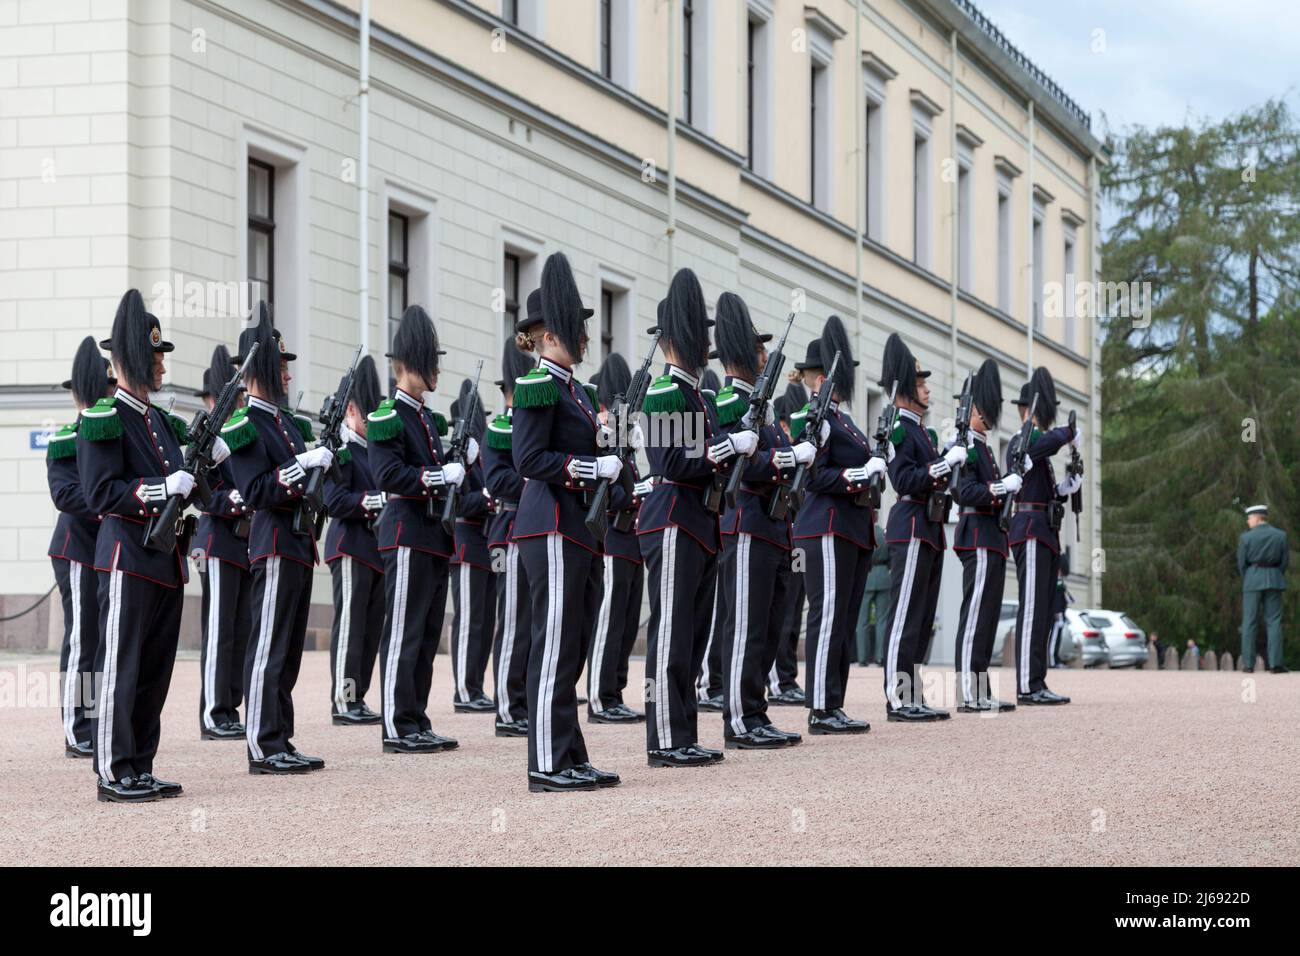 Oslo, Norvège - juin 26 2019 : Hans Majestet Kongens Garde (HMKG) est un bataillon de l'armée norvégienne servant de gardes royaux. Banque D'Images